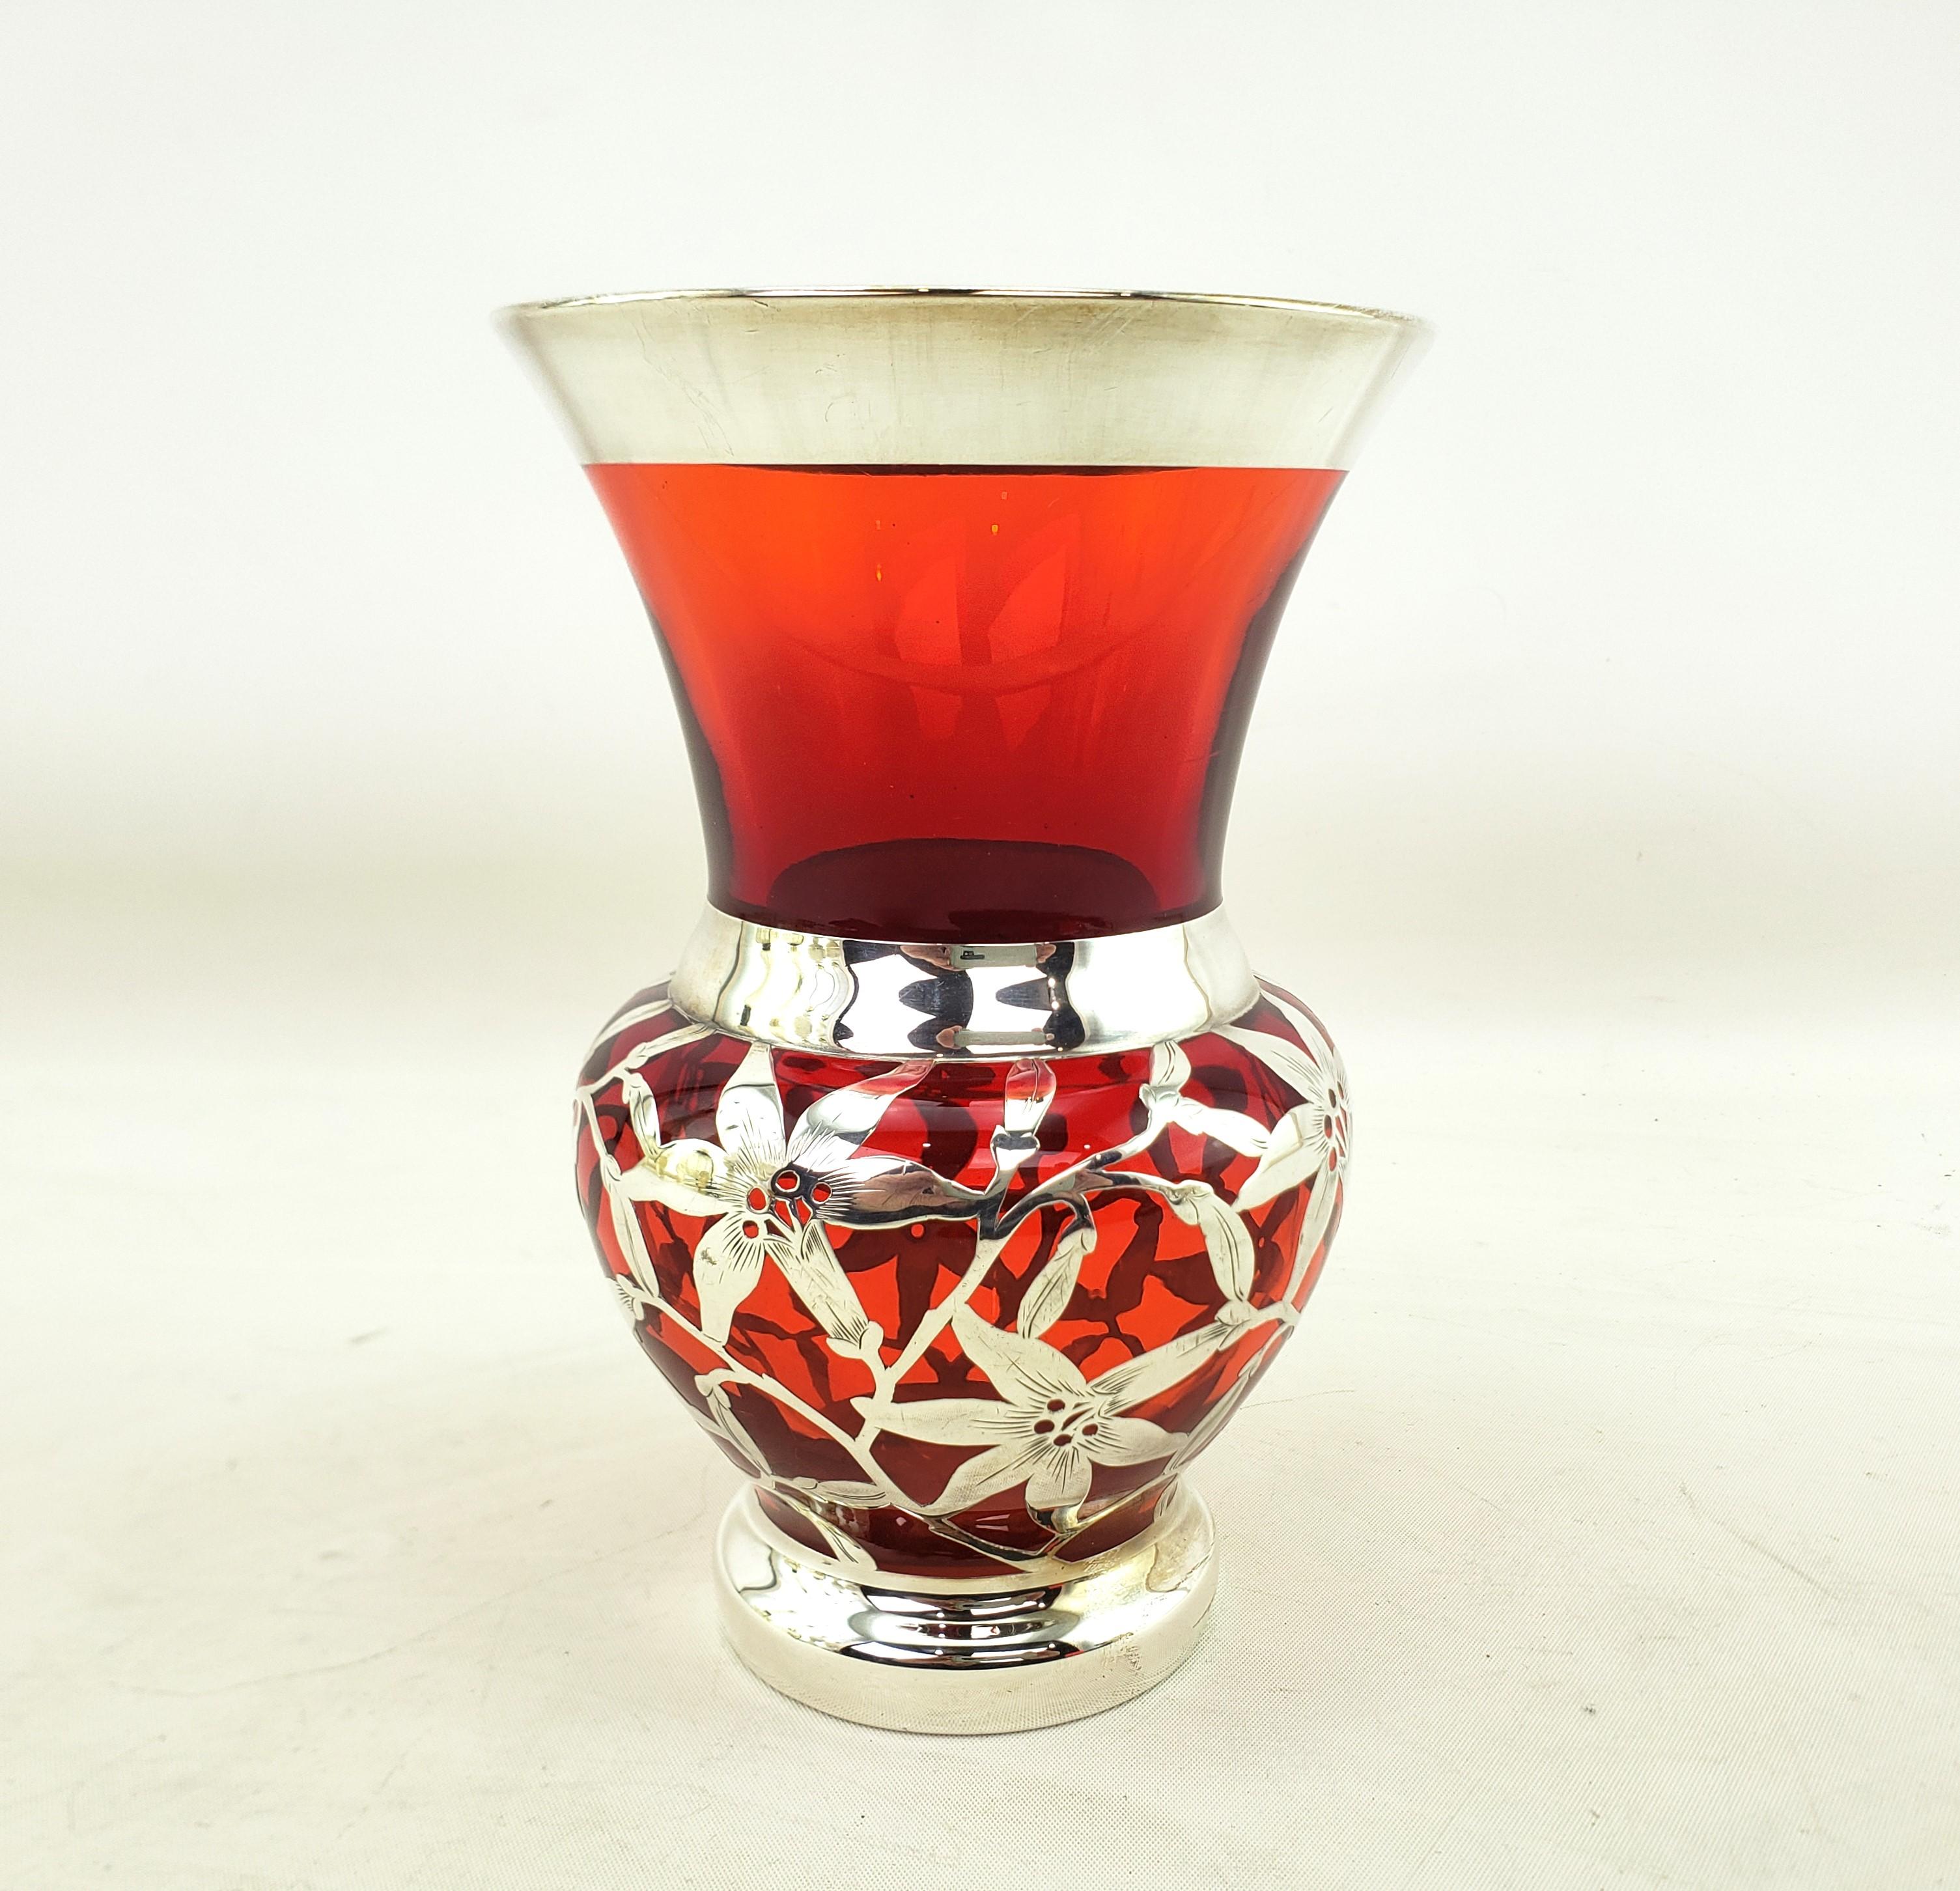 Diese gut ausgeführte antike Vase mit Silberauflage ist unsigniert, stammt aber vermutlich aus den Vereinigten Staaten und wurde um 1920 im Art-déco-Stil hergestellt. Die Vase besteht aus dickem rubinrotem Glas mit schwerem Silberüberzug, der